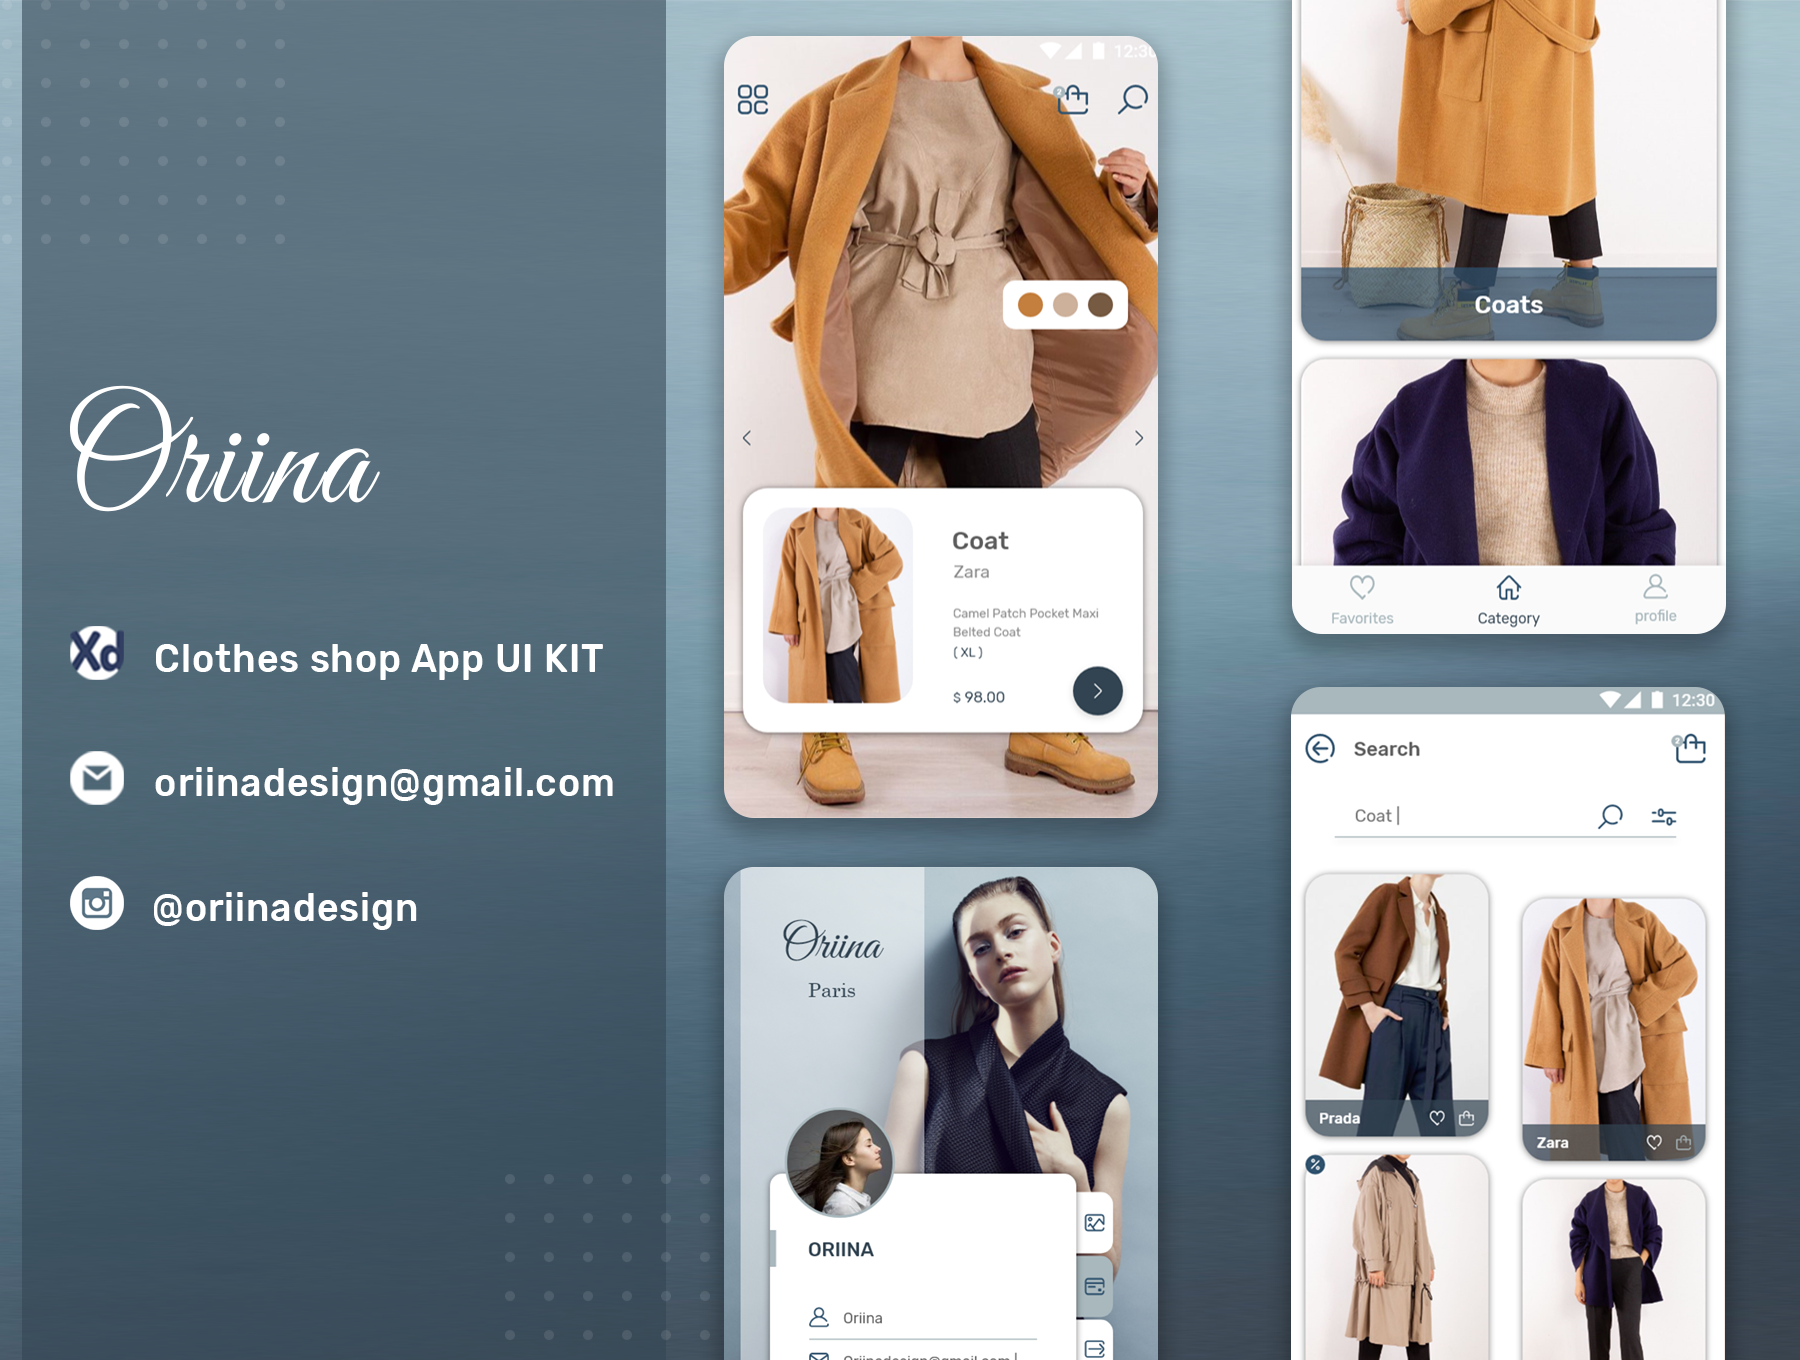 时尚服装店UI工具包模版素材下载Oriina clothes shop Ui kit插图6